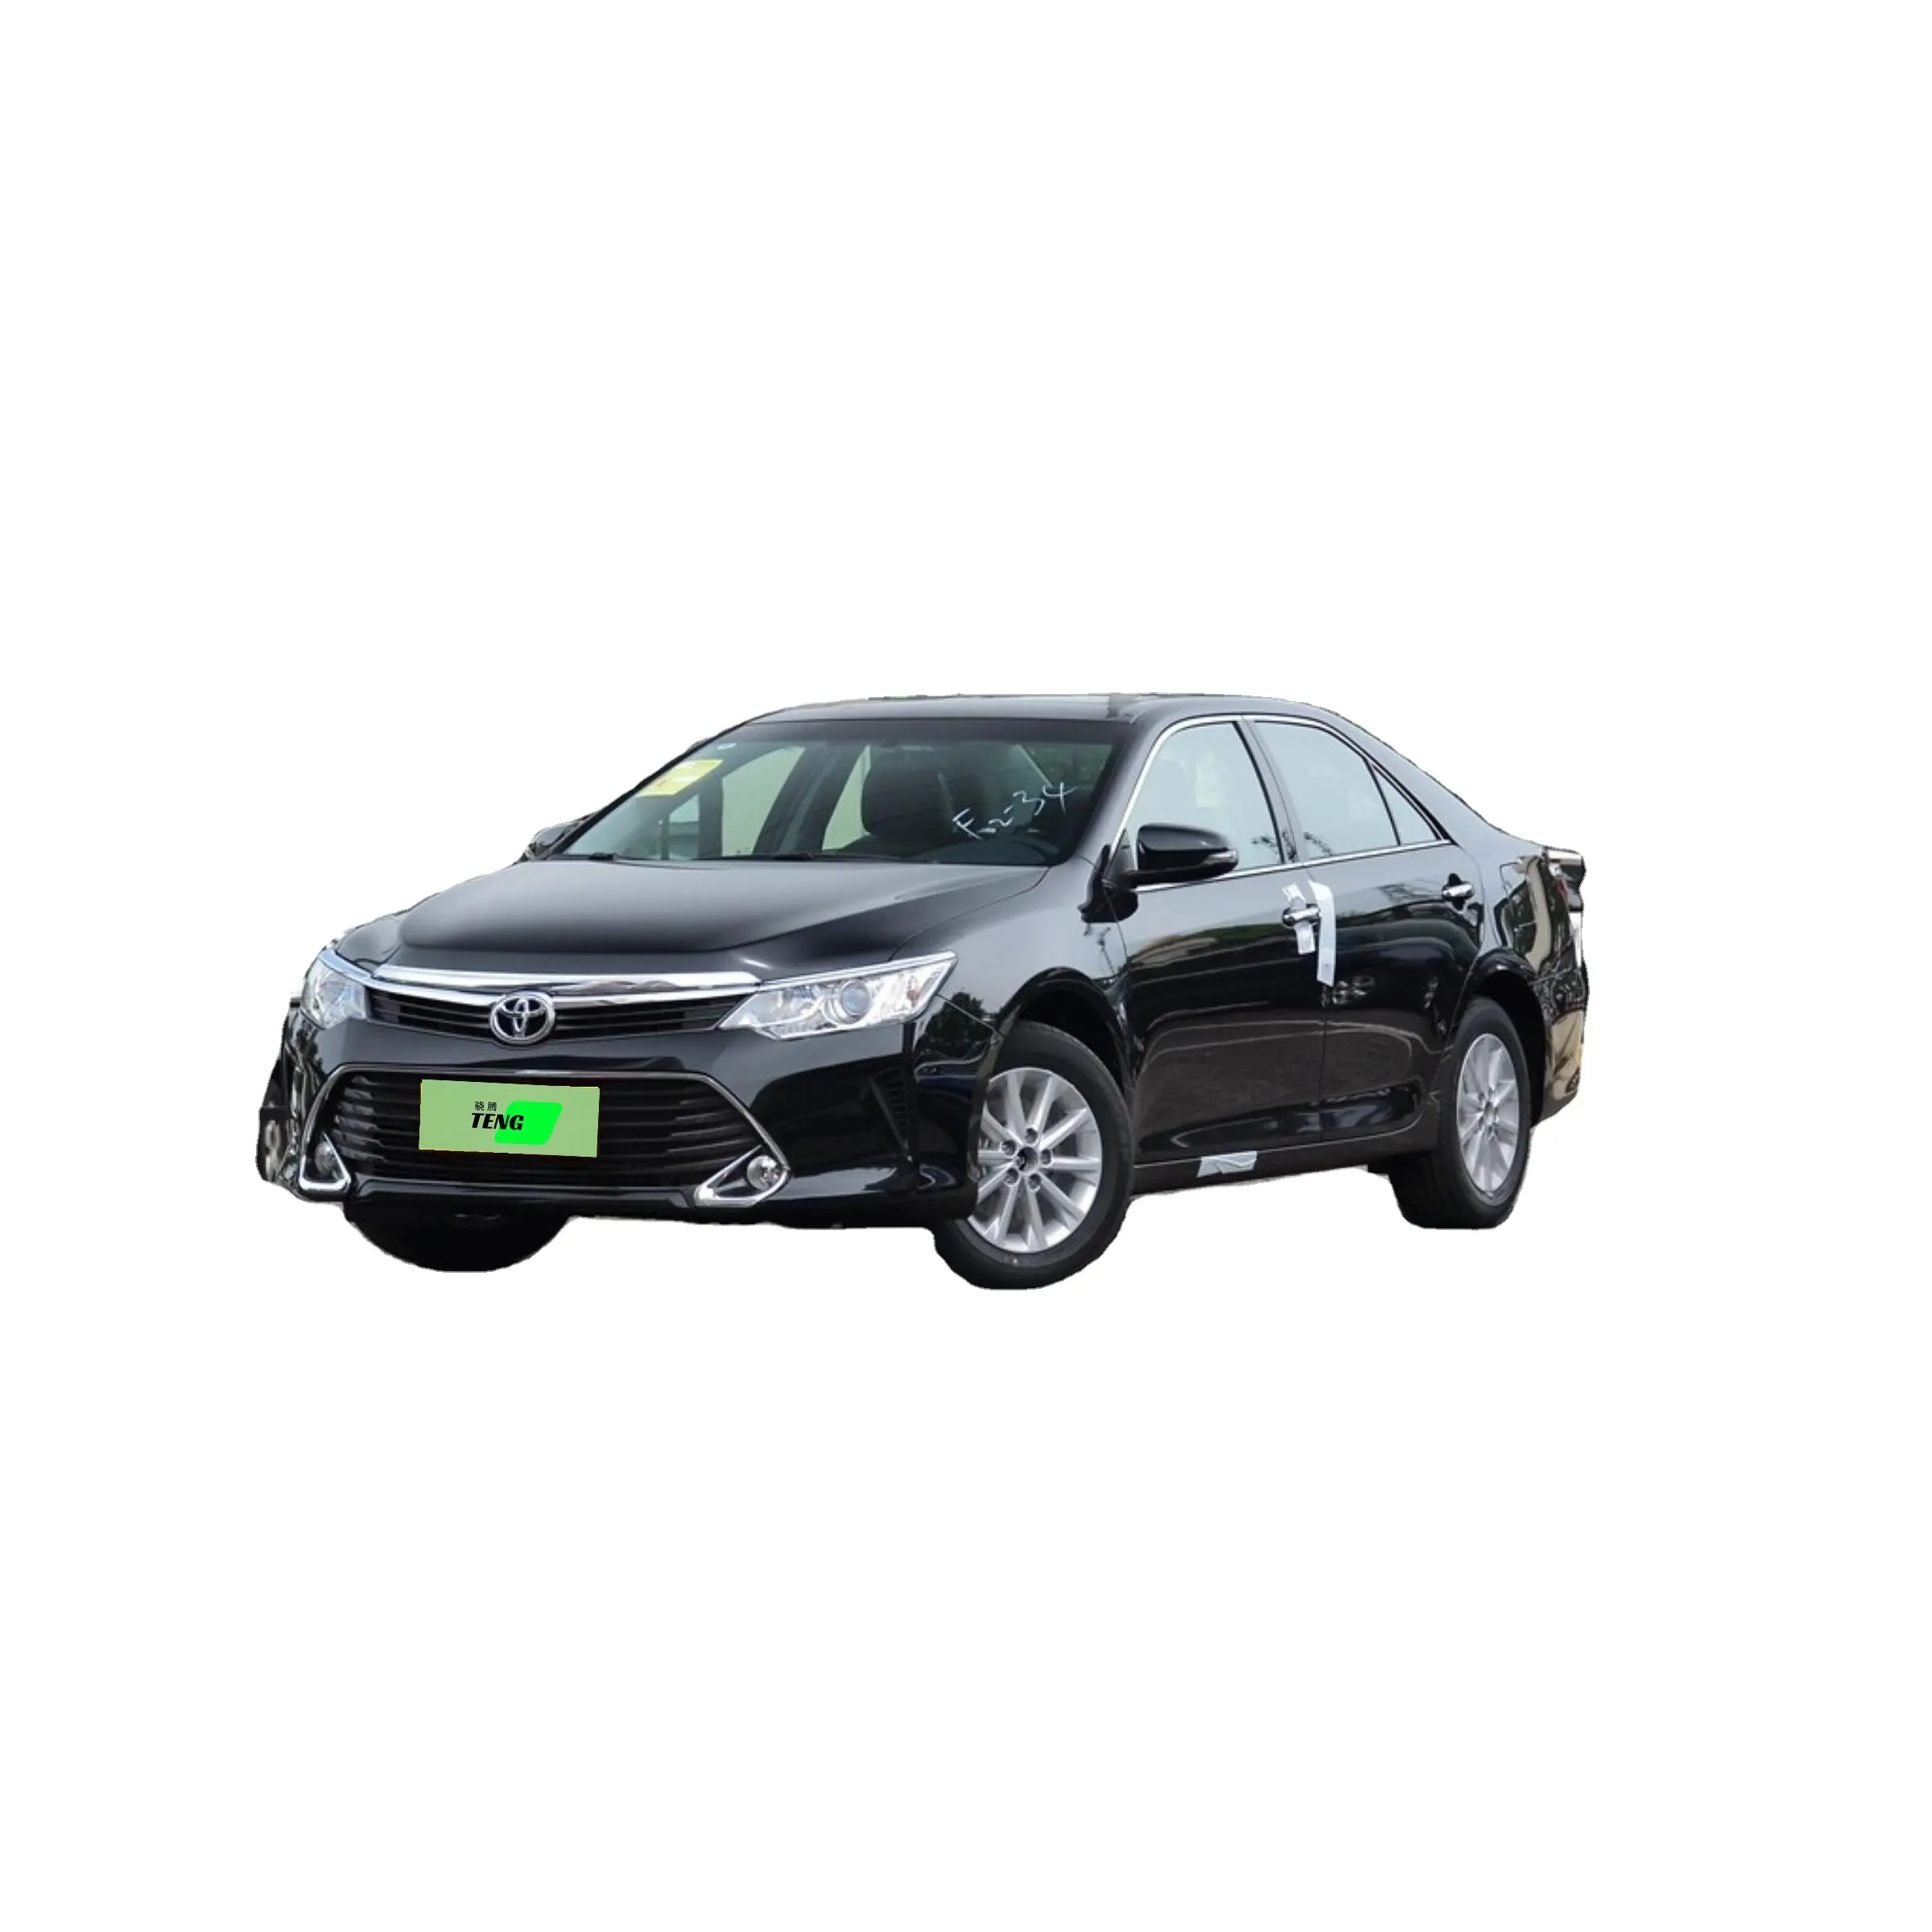 Toyota-recambio de transmisión Manual, accesorio usado, buen estado, Camry, a la venta, 2016